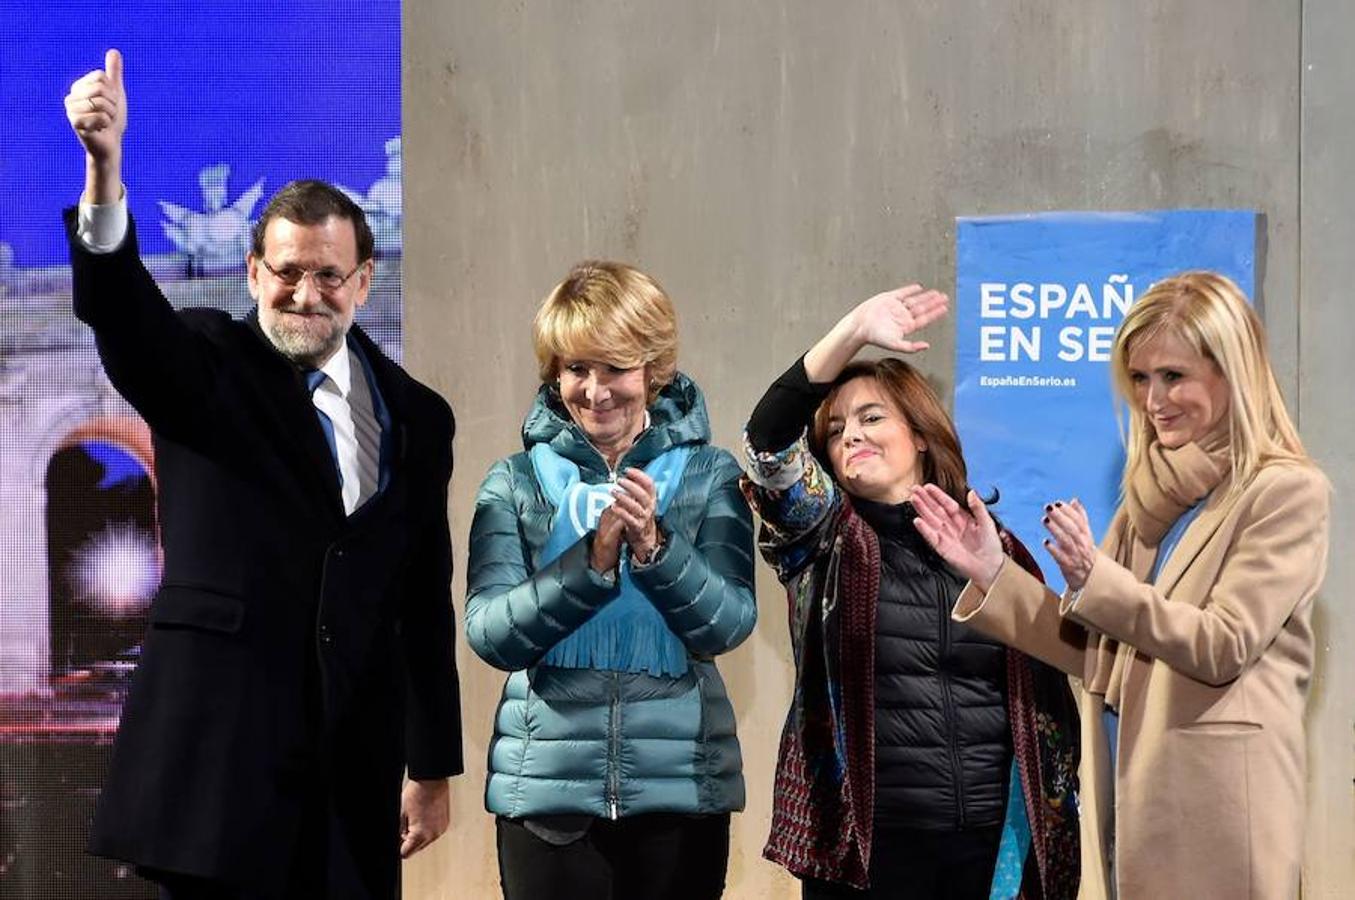 El sexto presidente del Gobierno, abandonará La Moncloa tras 7 años al frente del país.